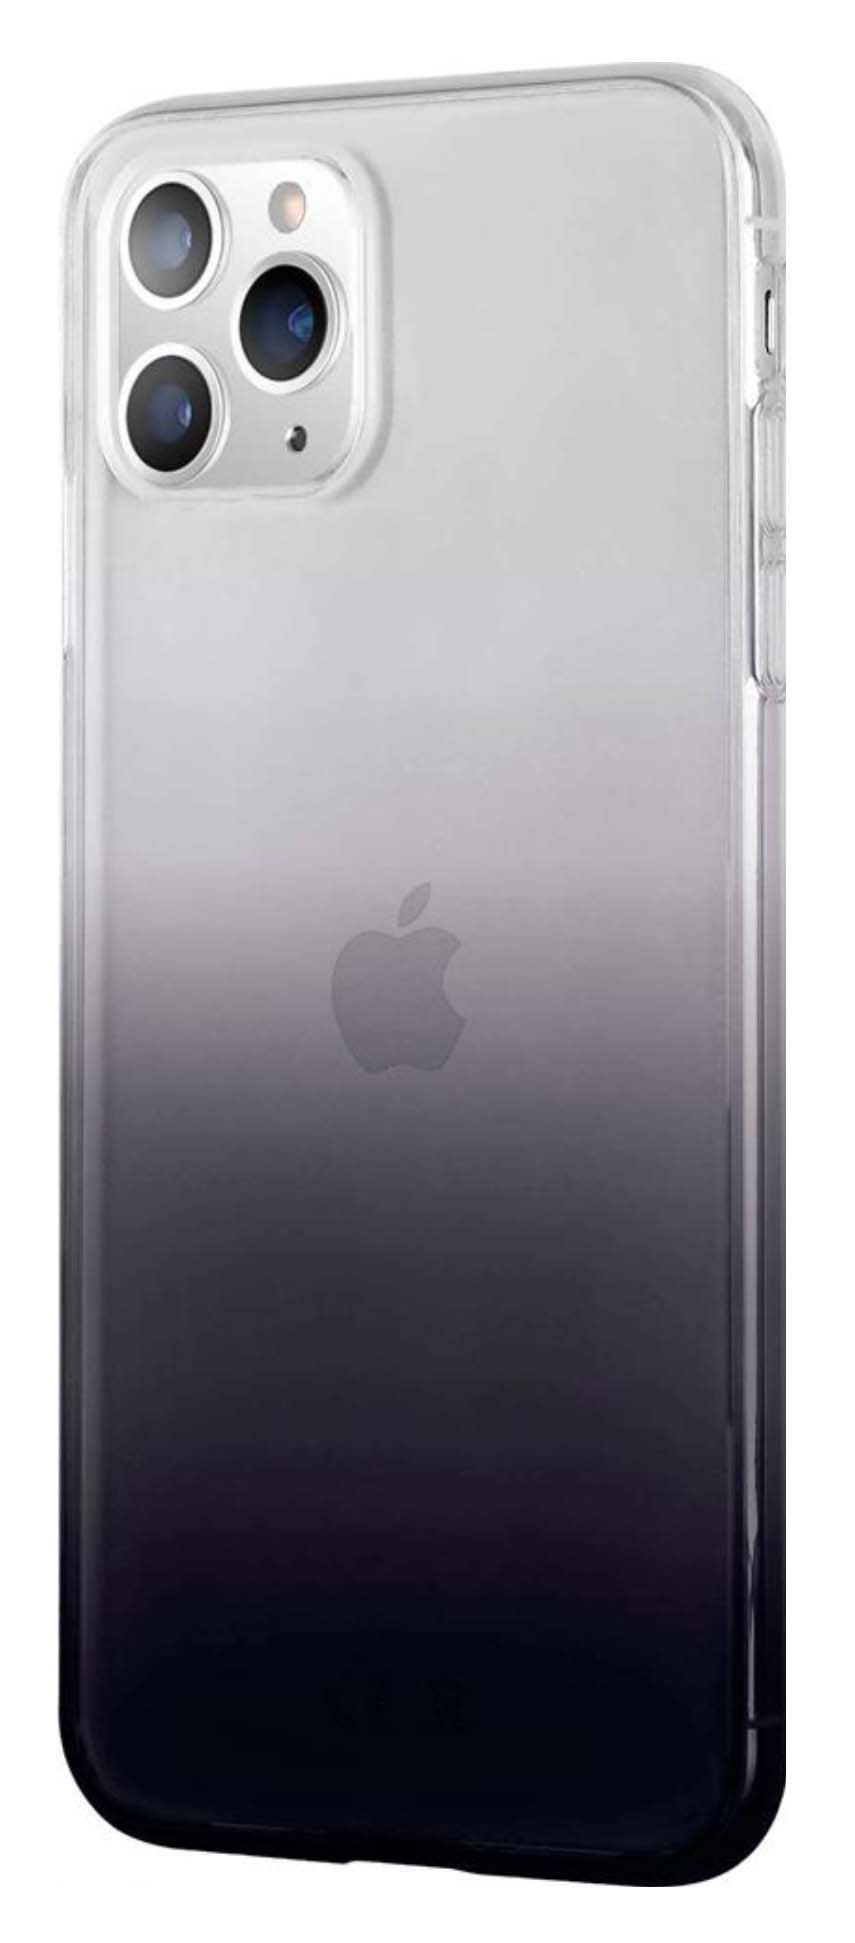   Alt Del Чехол-накладка LuxCase для смартфона Apple iPhone 11 Pro Max, Термопластичный полиуретан, Прозрачный (Черный градиент), 64502